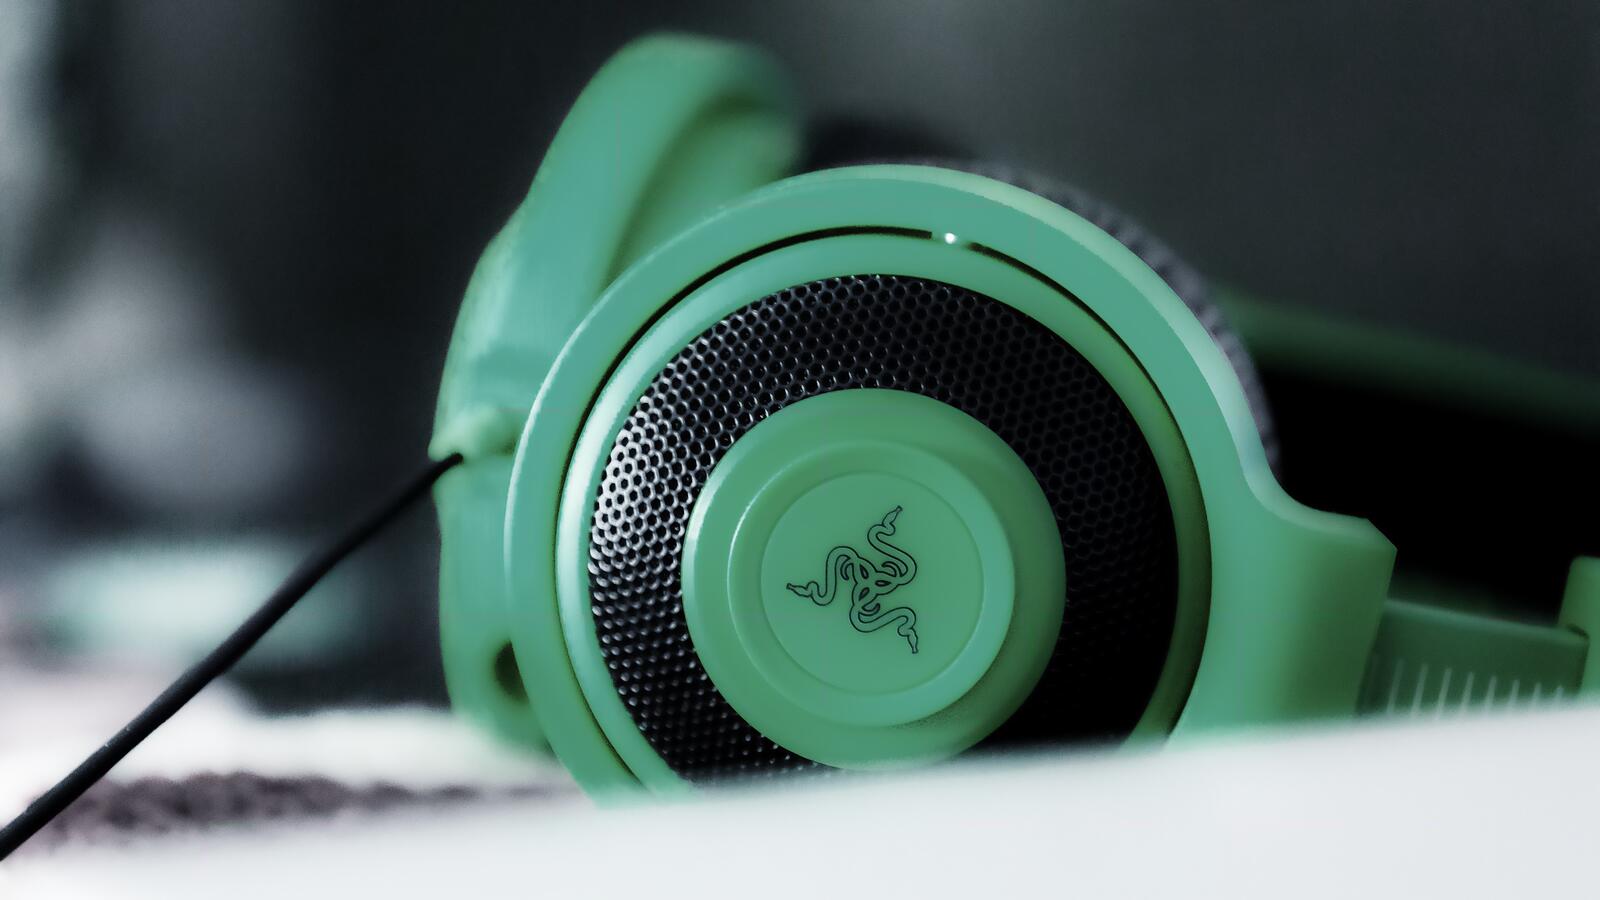 Wallpapers razer headphones green on the desktop